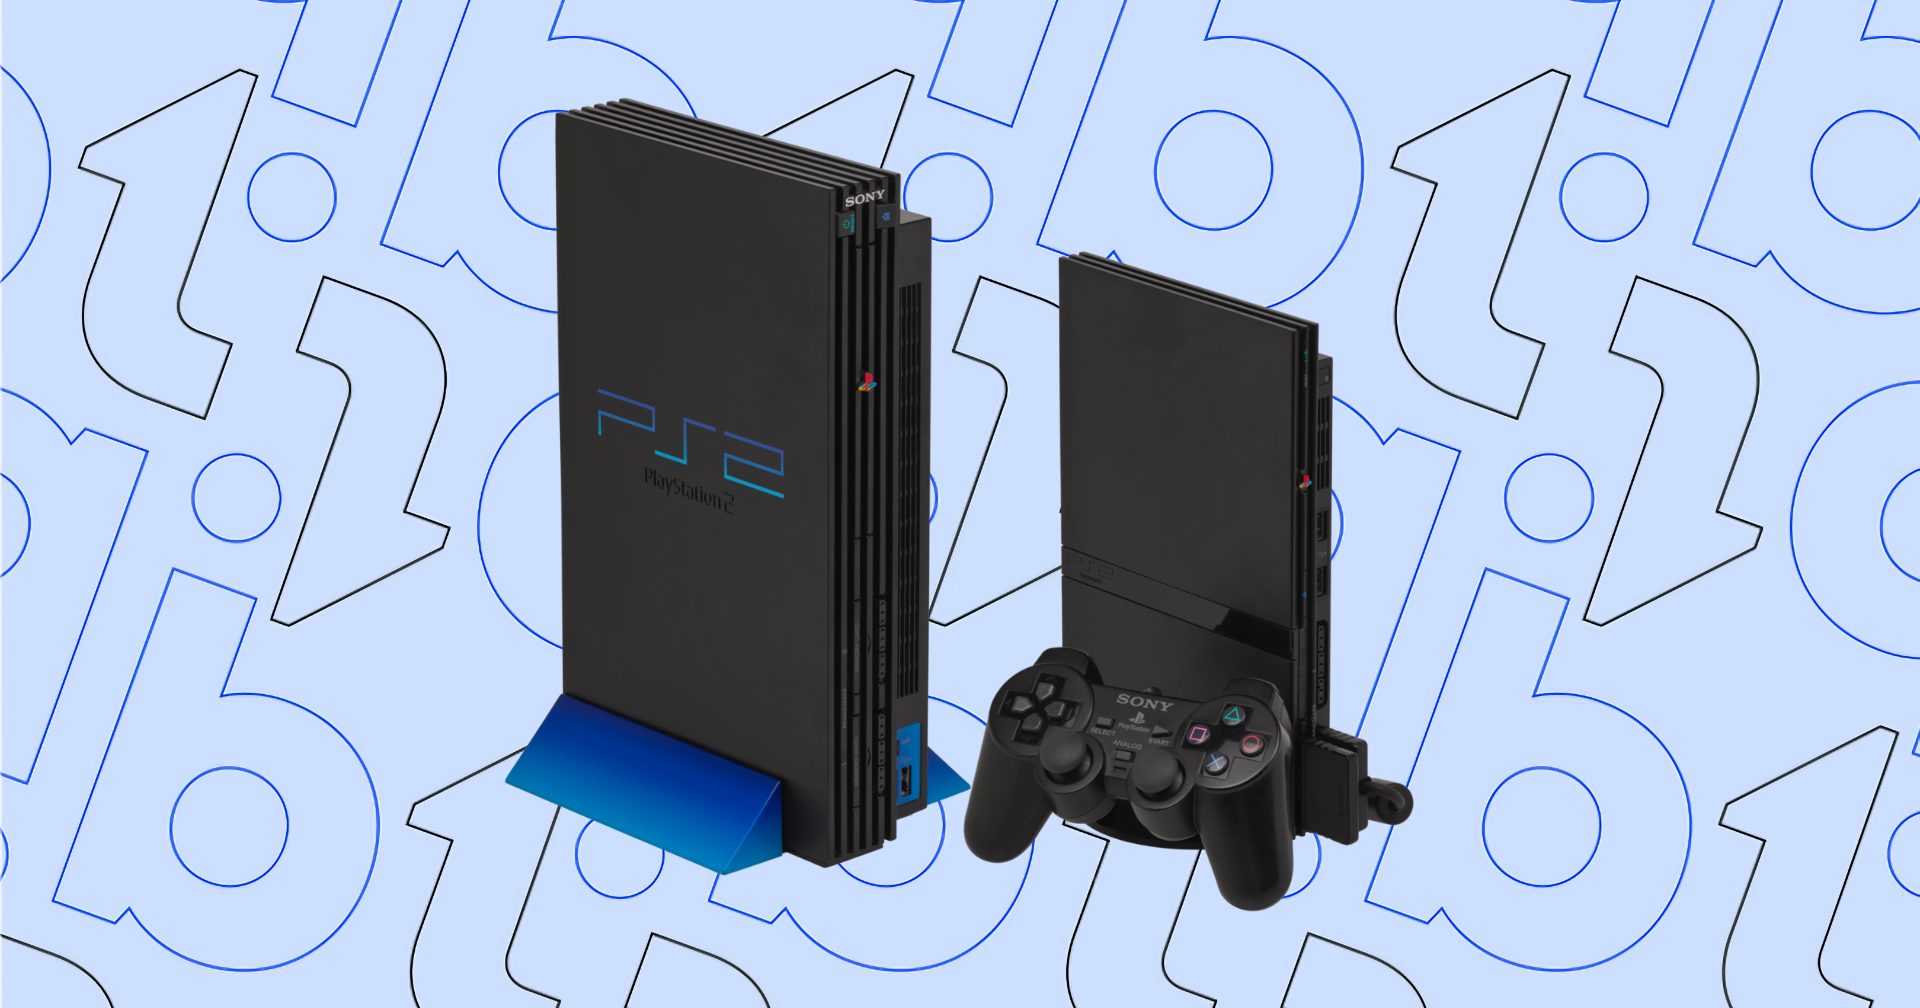 ครบรอบ 24 ปี วันวางจำหน่าย PlayStation 2 เครื่องเล่นเกมขายดีที่สุดในโลก